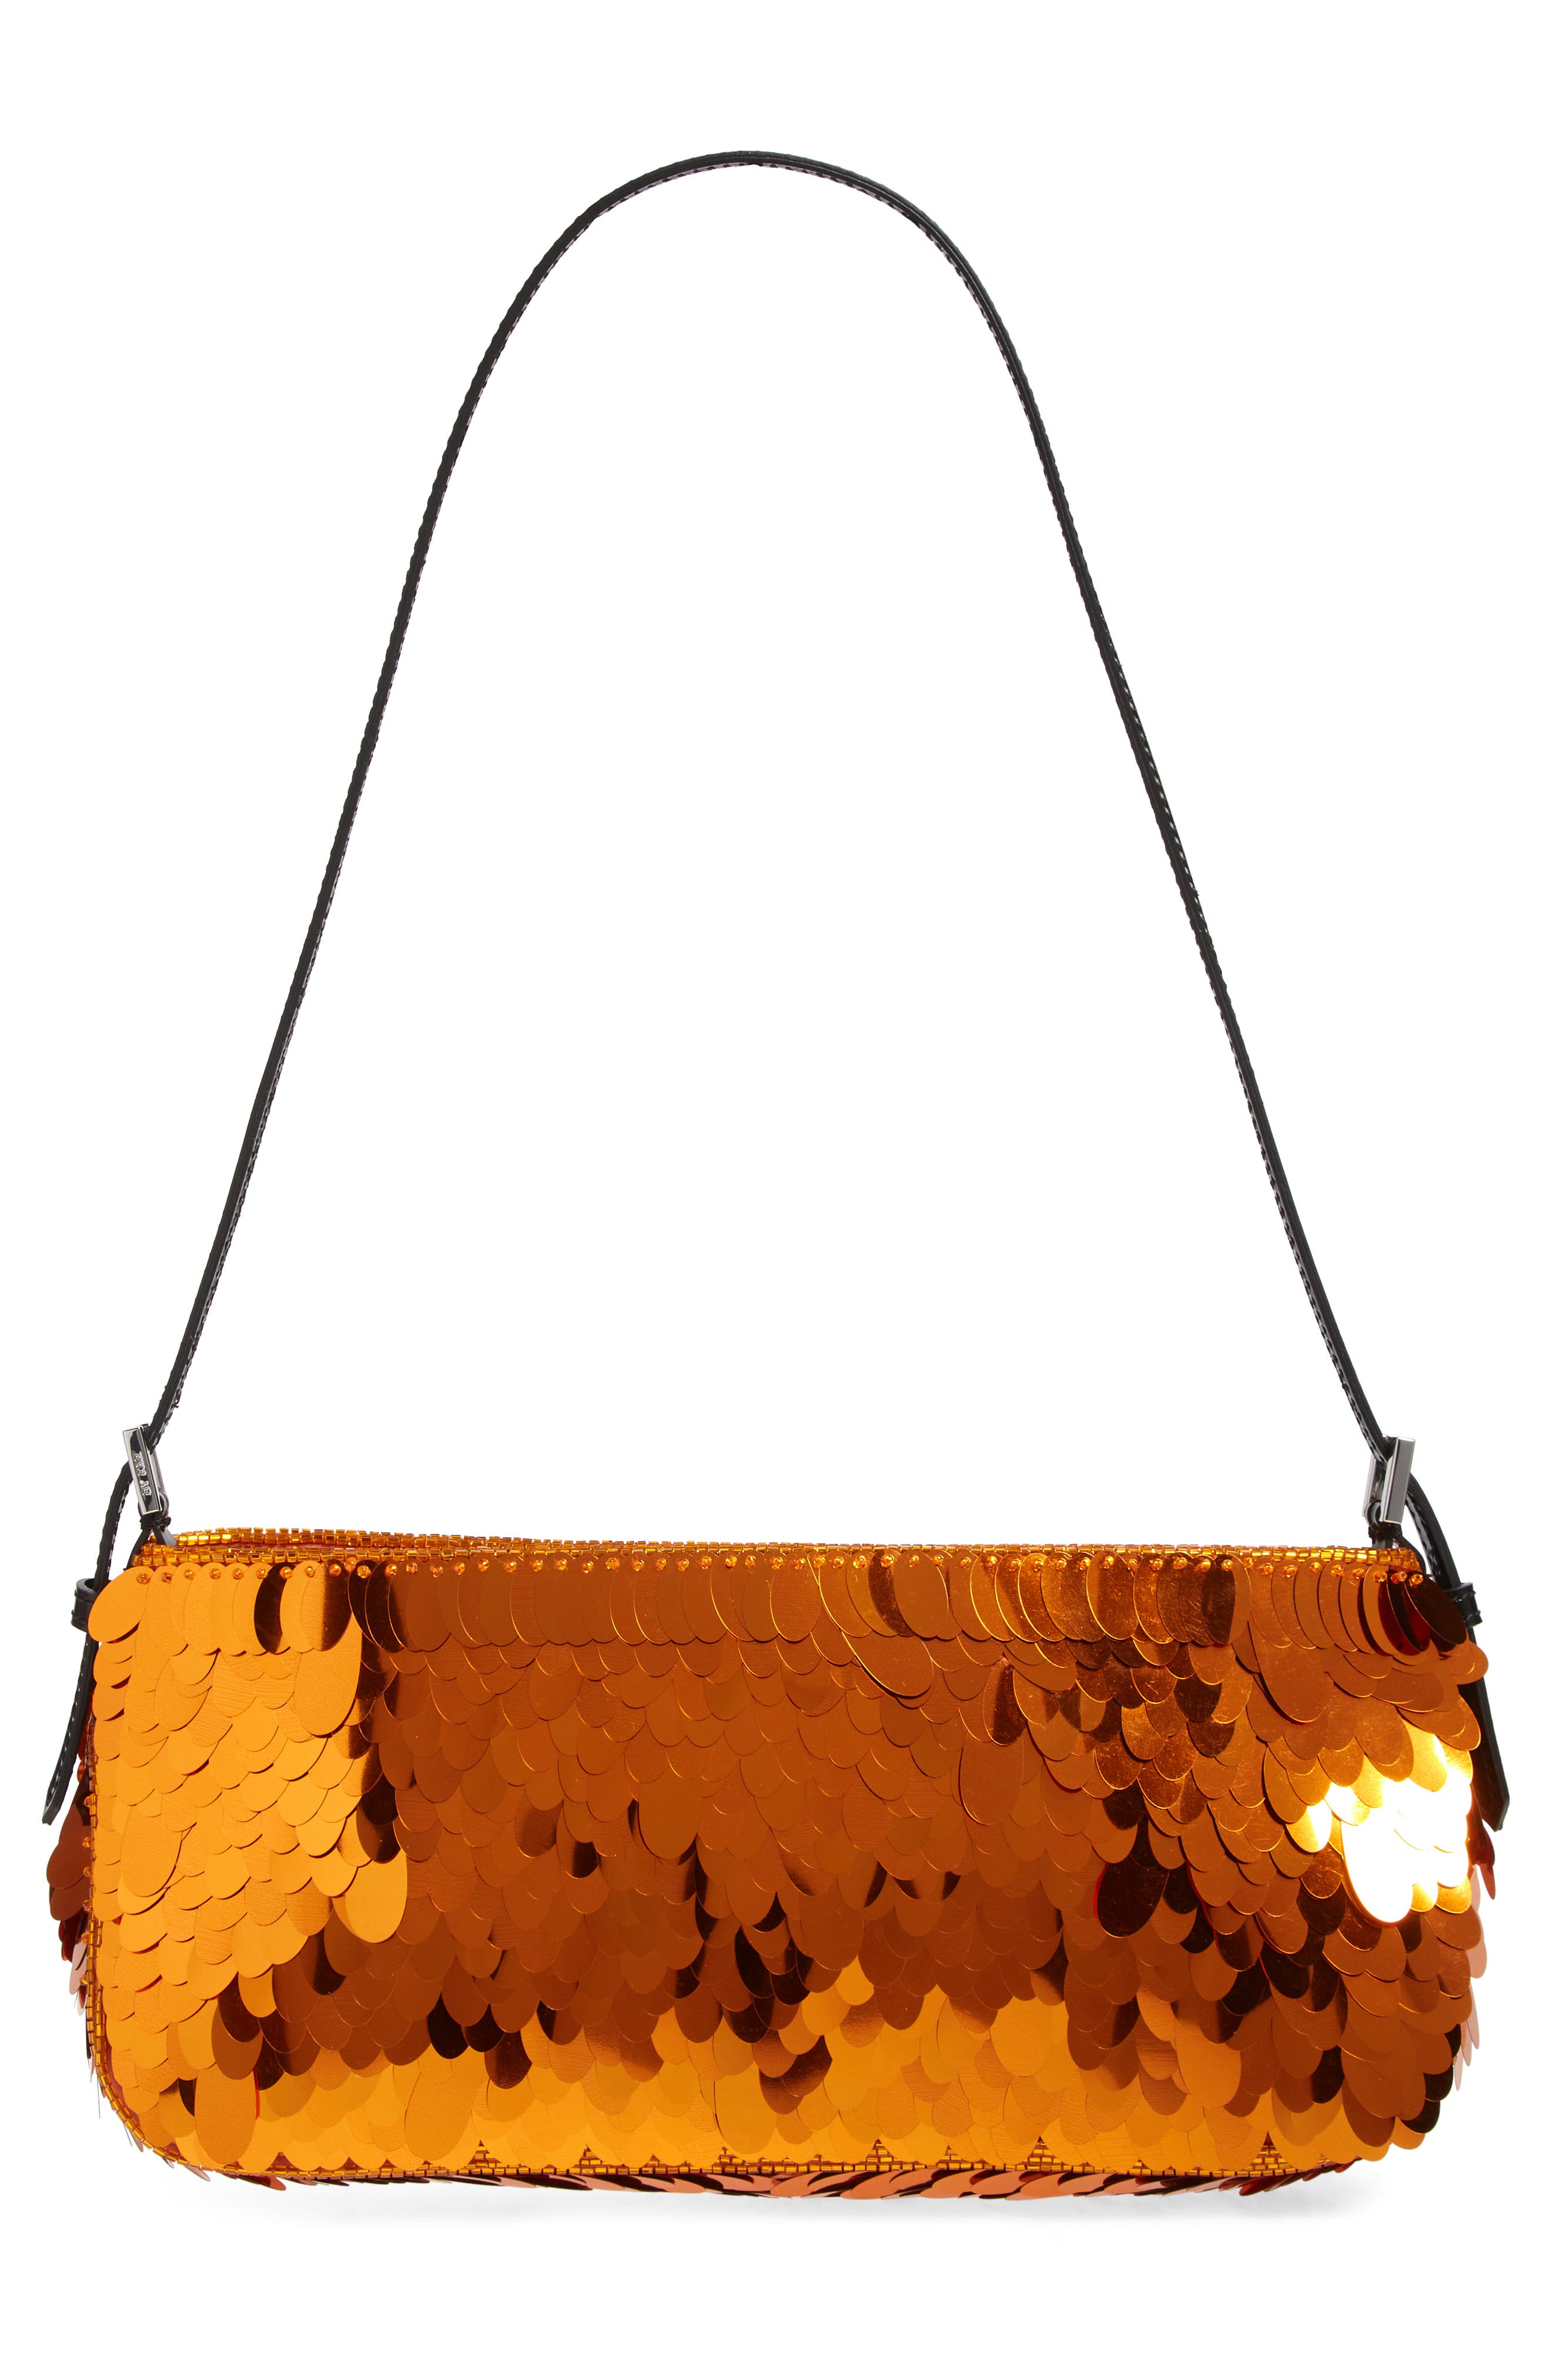 Leather Shoulder Bag - Marmalade